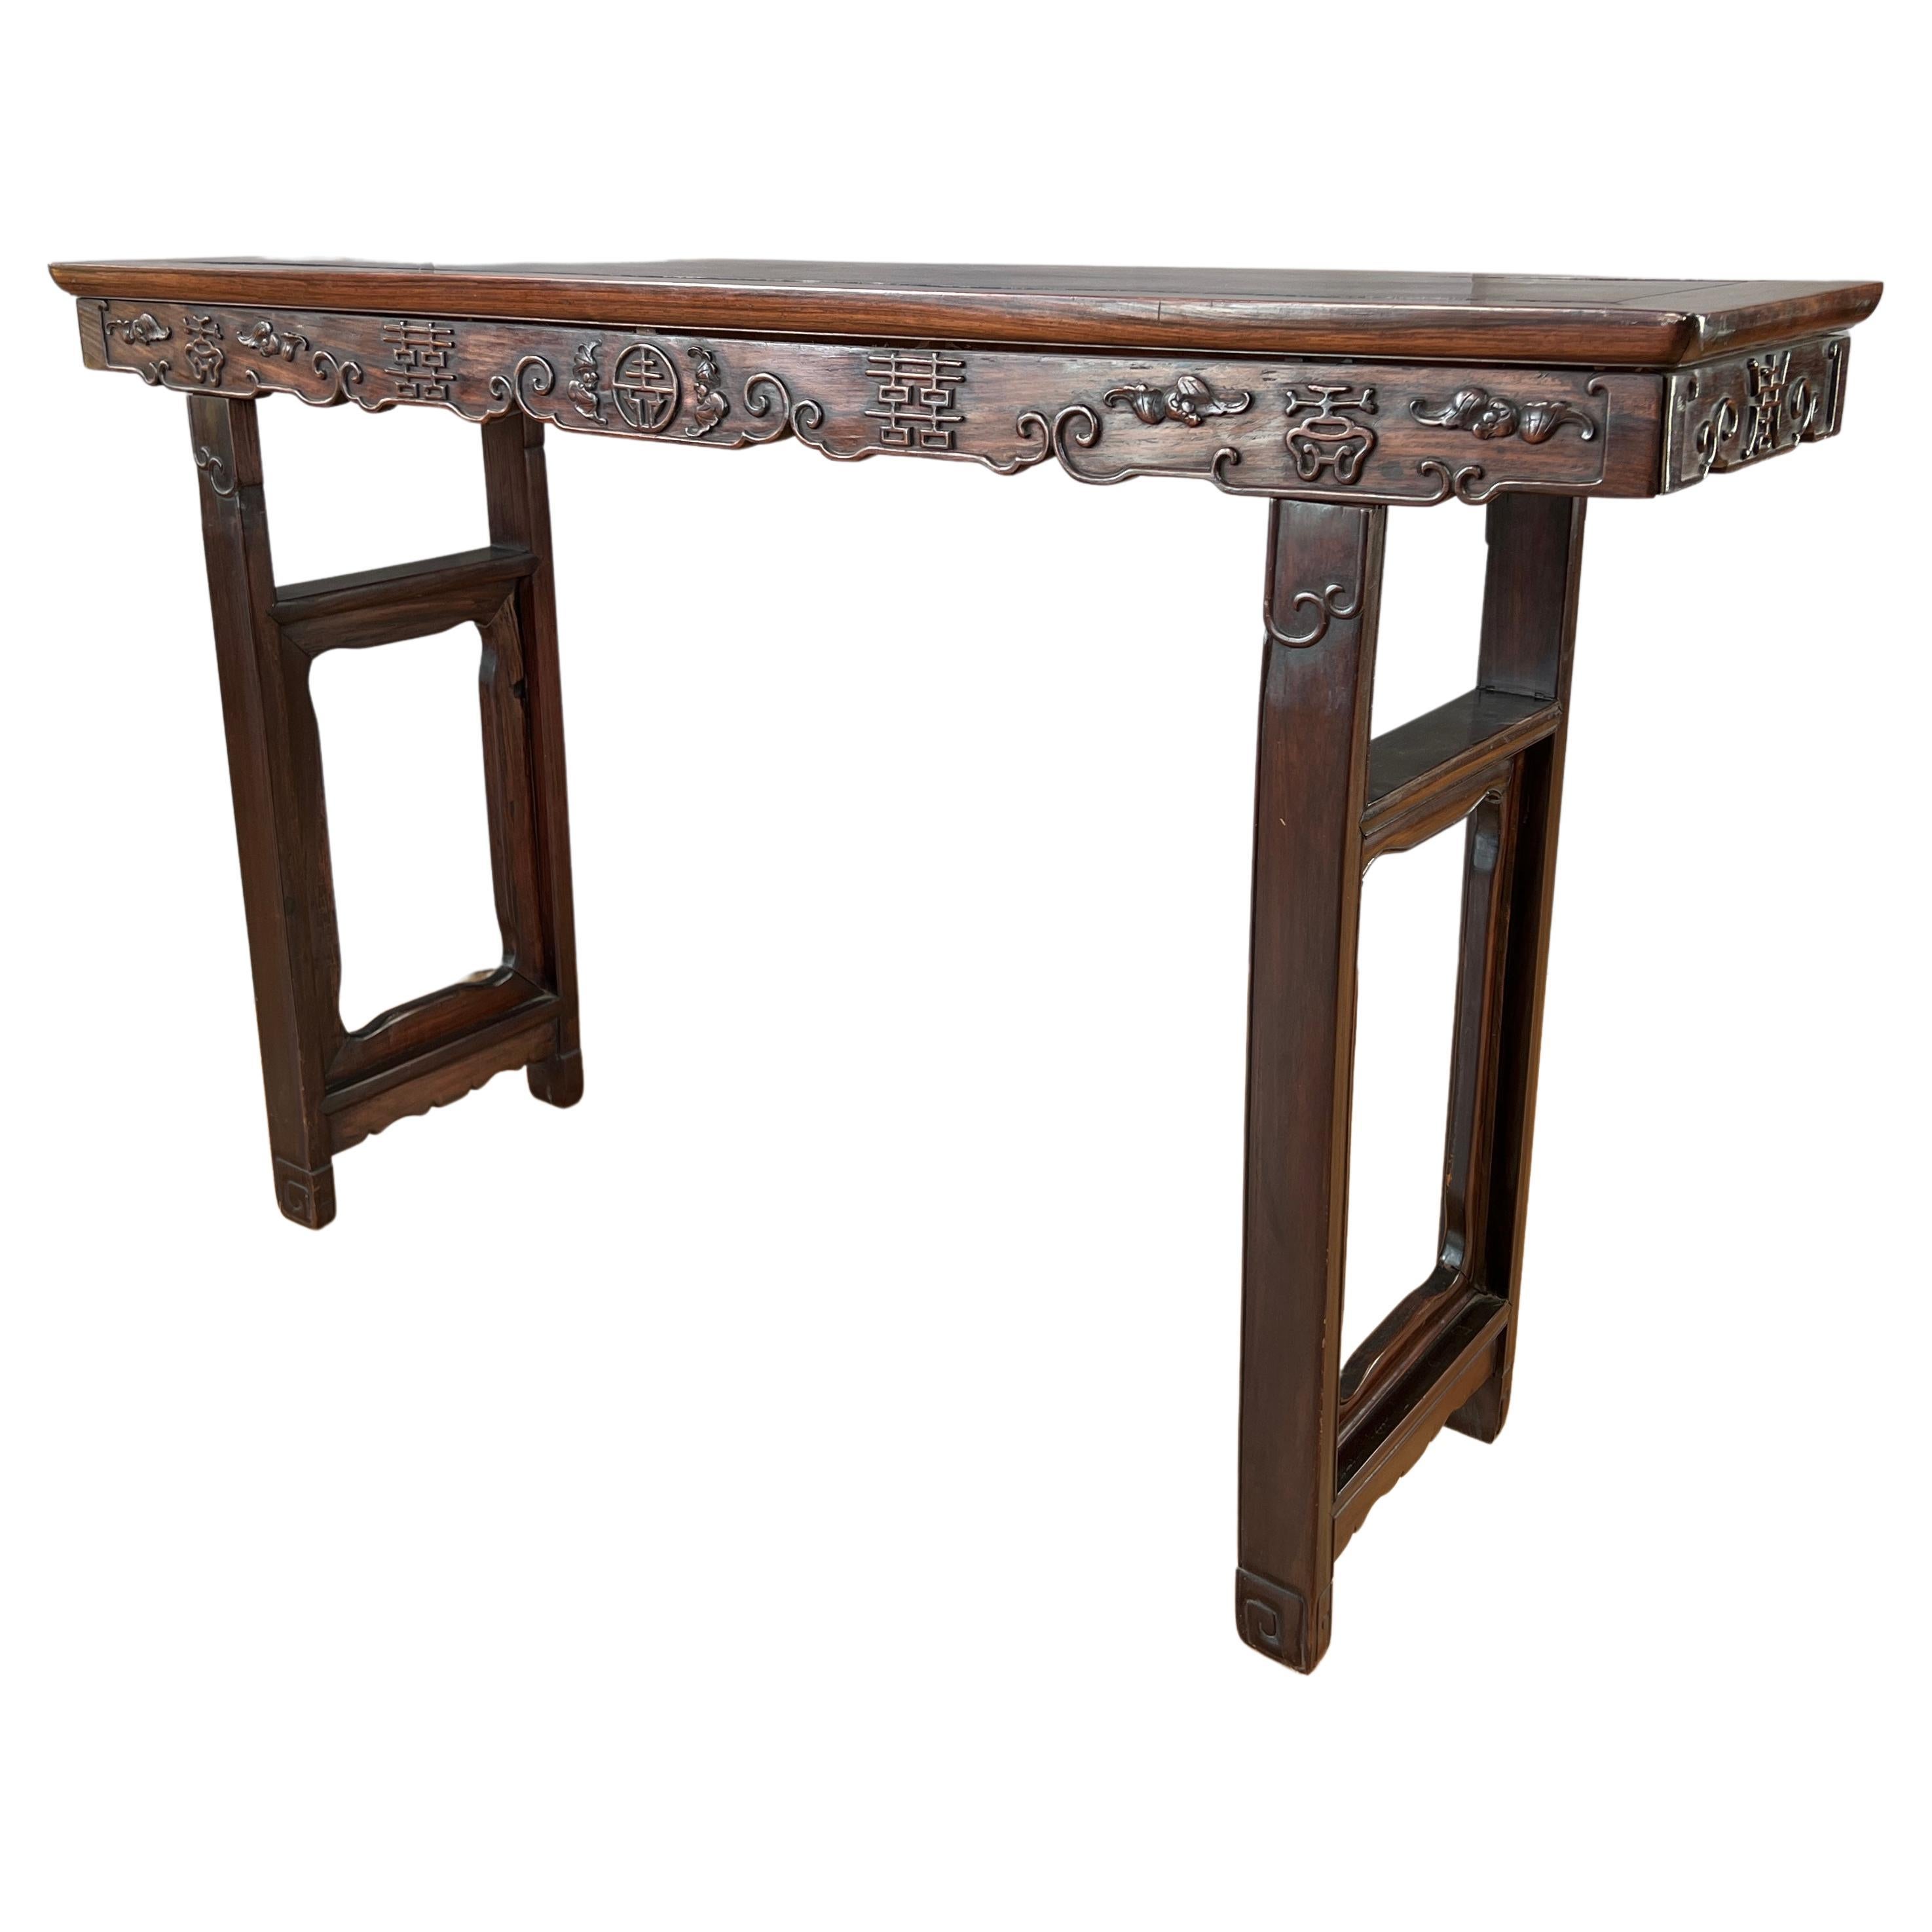 Chinesischer Zitanholz- Alter Tisch aus der Qing-Dynastie, 19. Jahrhundert